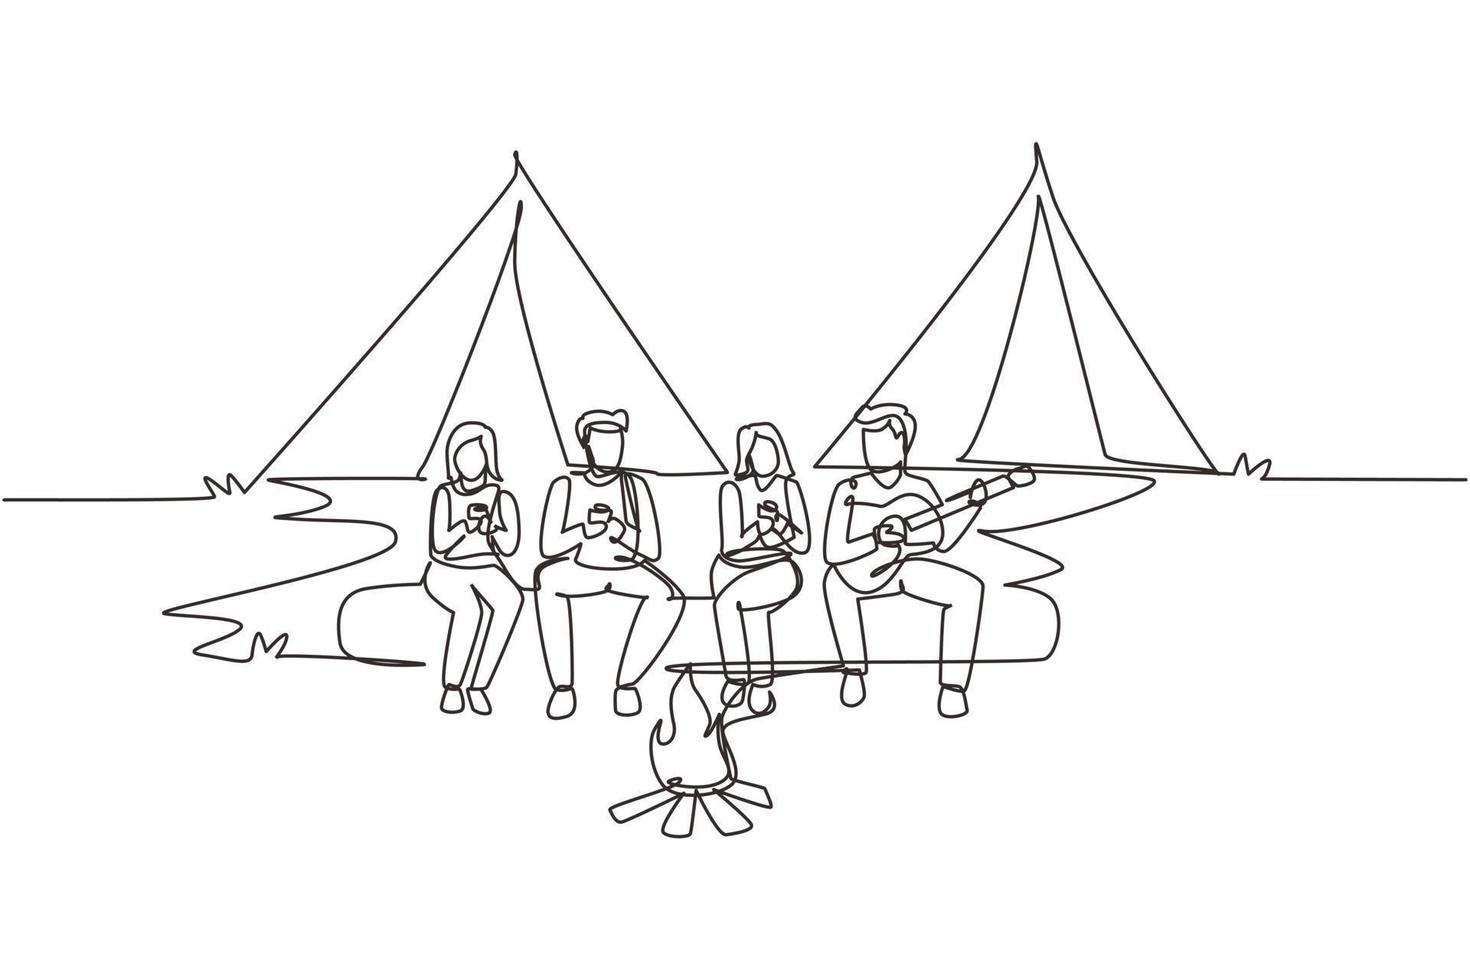 dibujo de una sola línea dos parejas de excursionistas sentados en un tronco de madera cerca de una fogata en el bosque. gente bebiendo té caliente y hombre tocando la guitarra. equipo de camping y mochila. vector de diseño de dibujo de línea continua